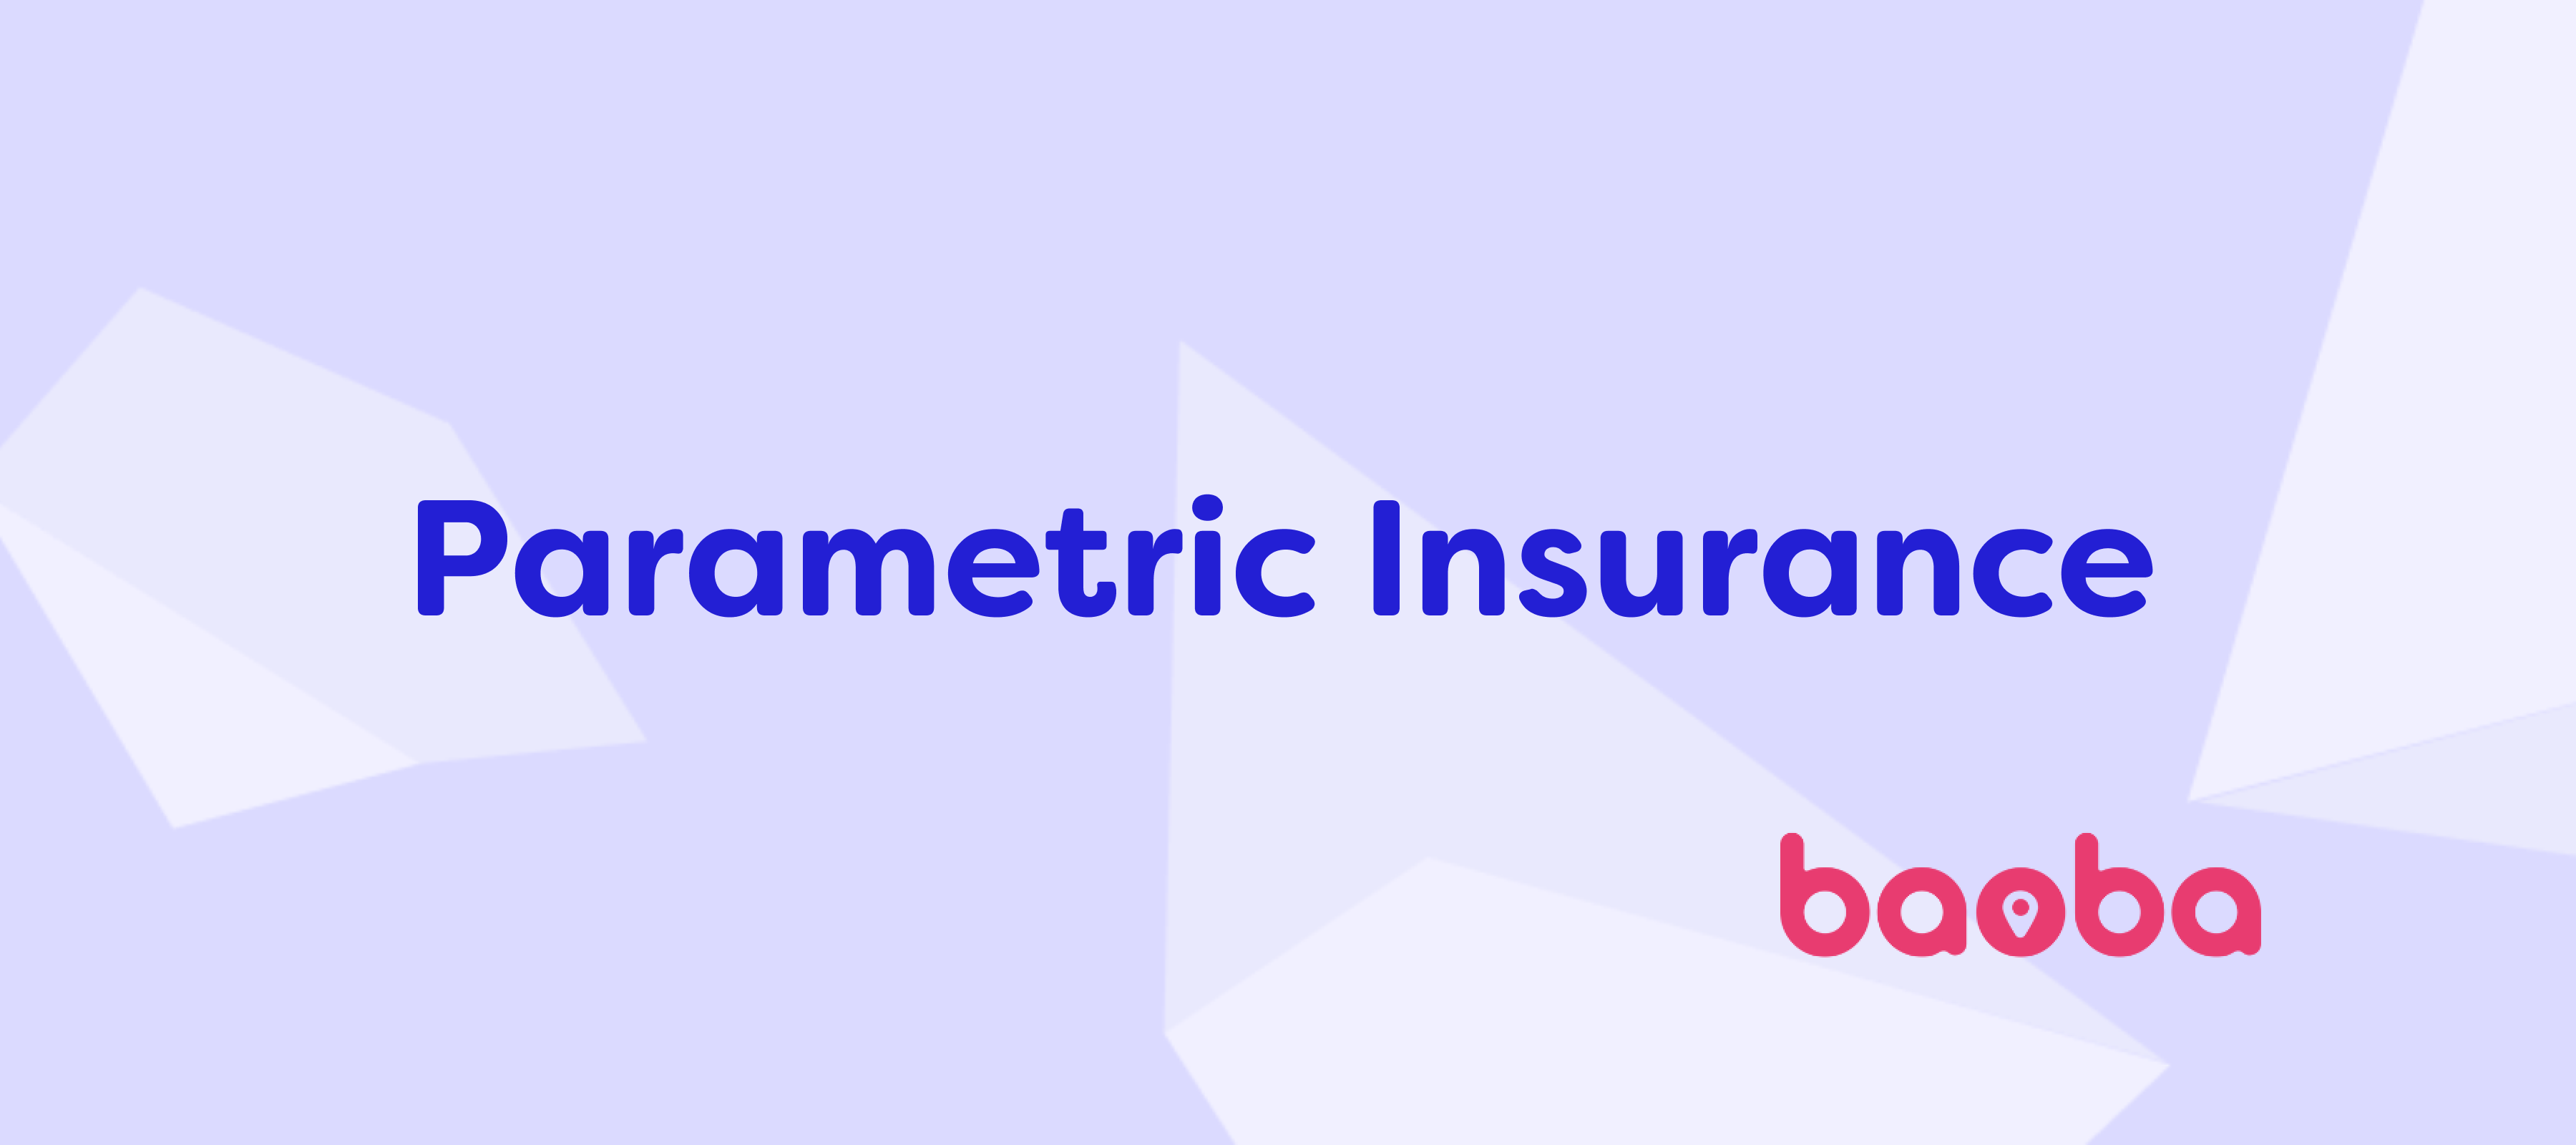 parametric insurance baoba